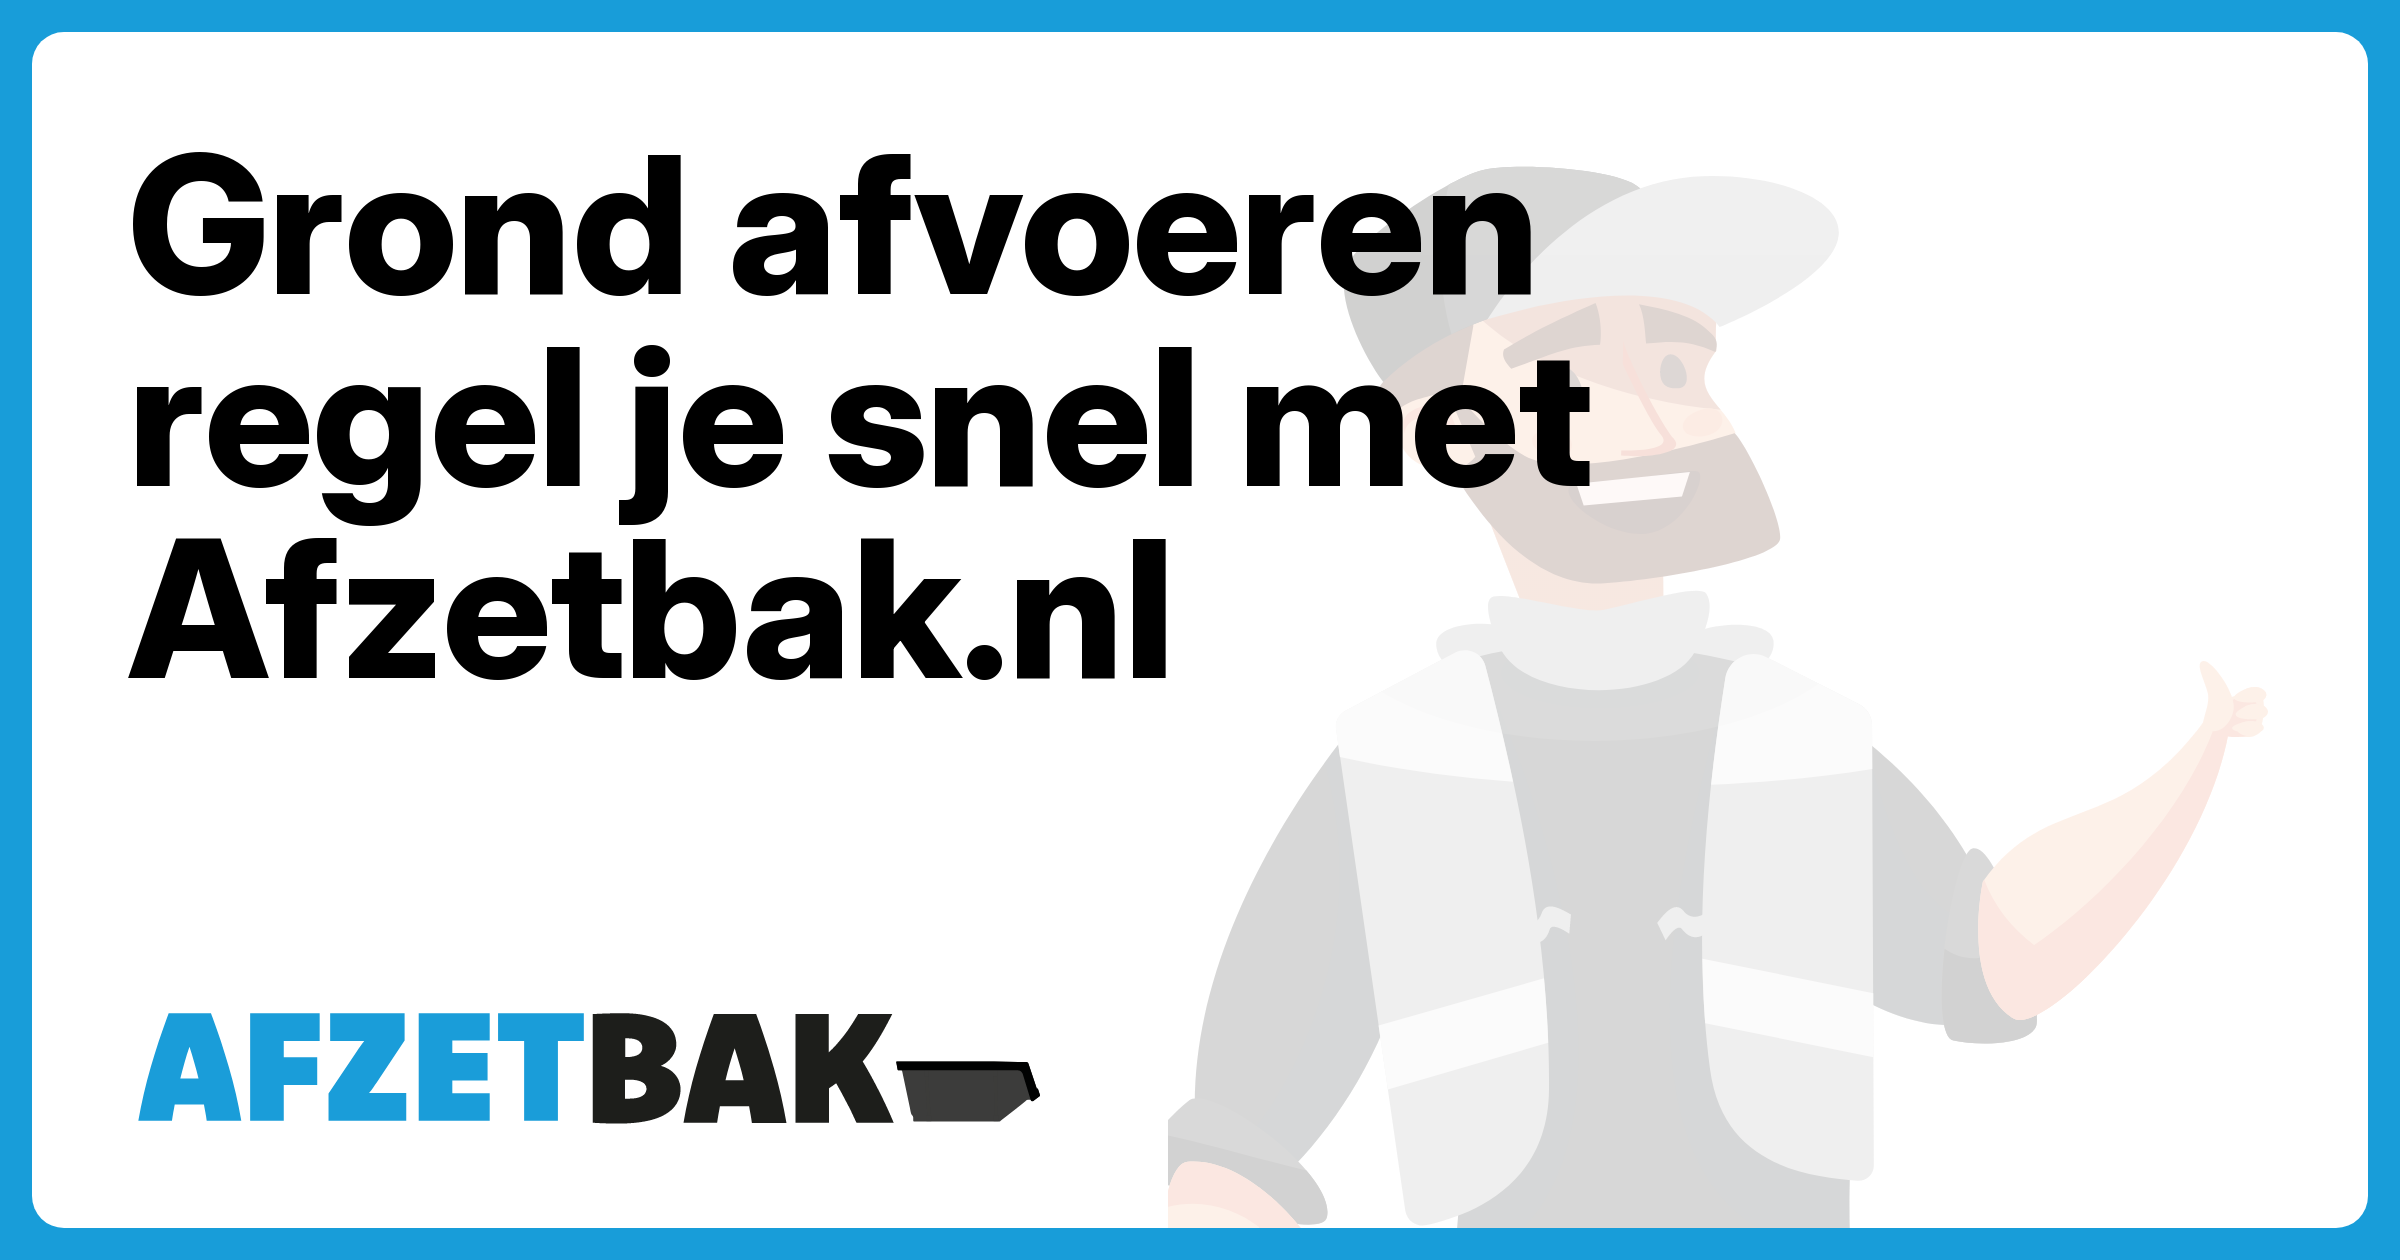 Grond afvoeren regel je snel met Afzetbak.nl - Afzetbak.nl